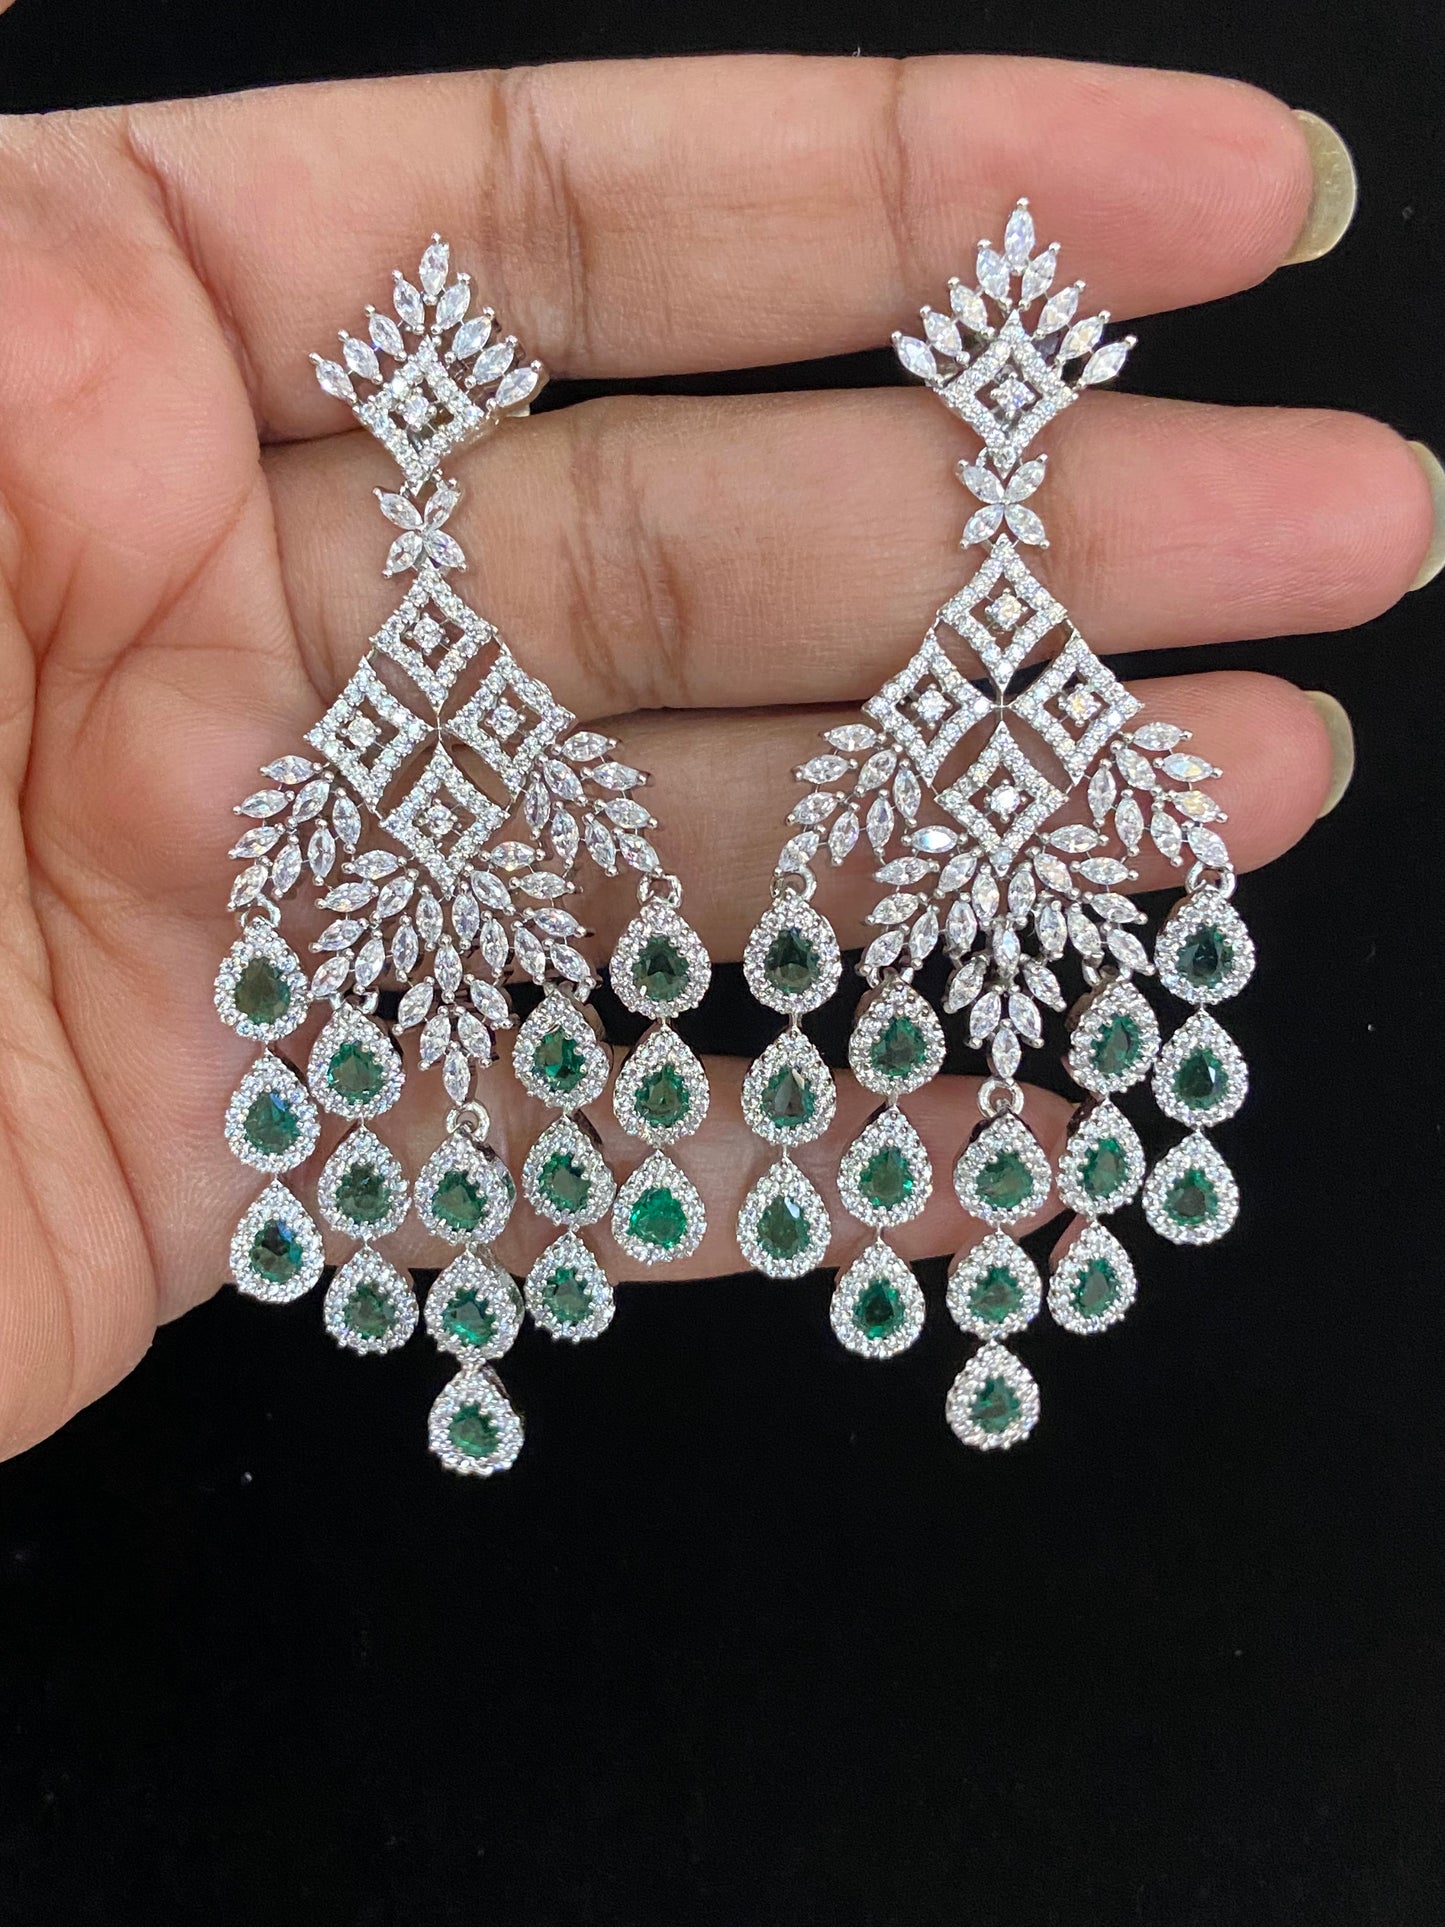 Diamond look earrings | Ad earrings | Partywear earrings